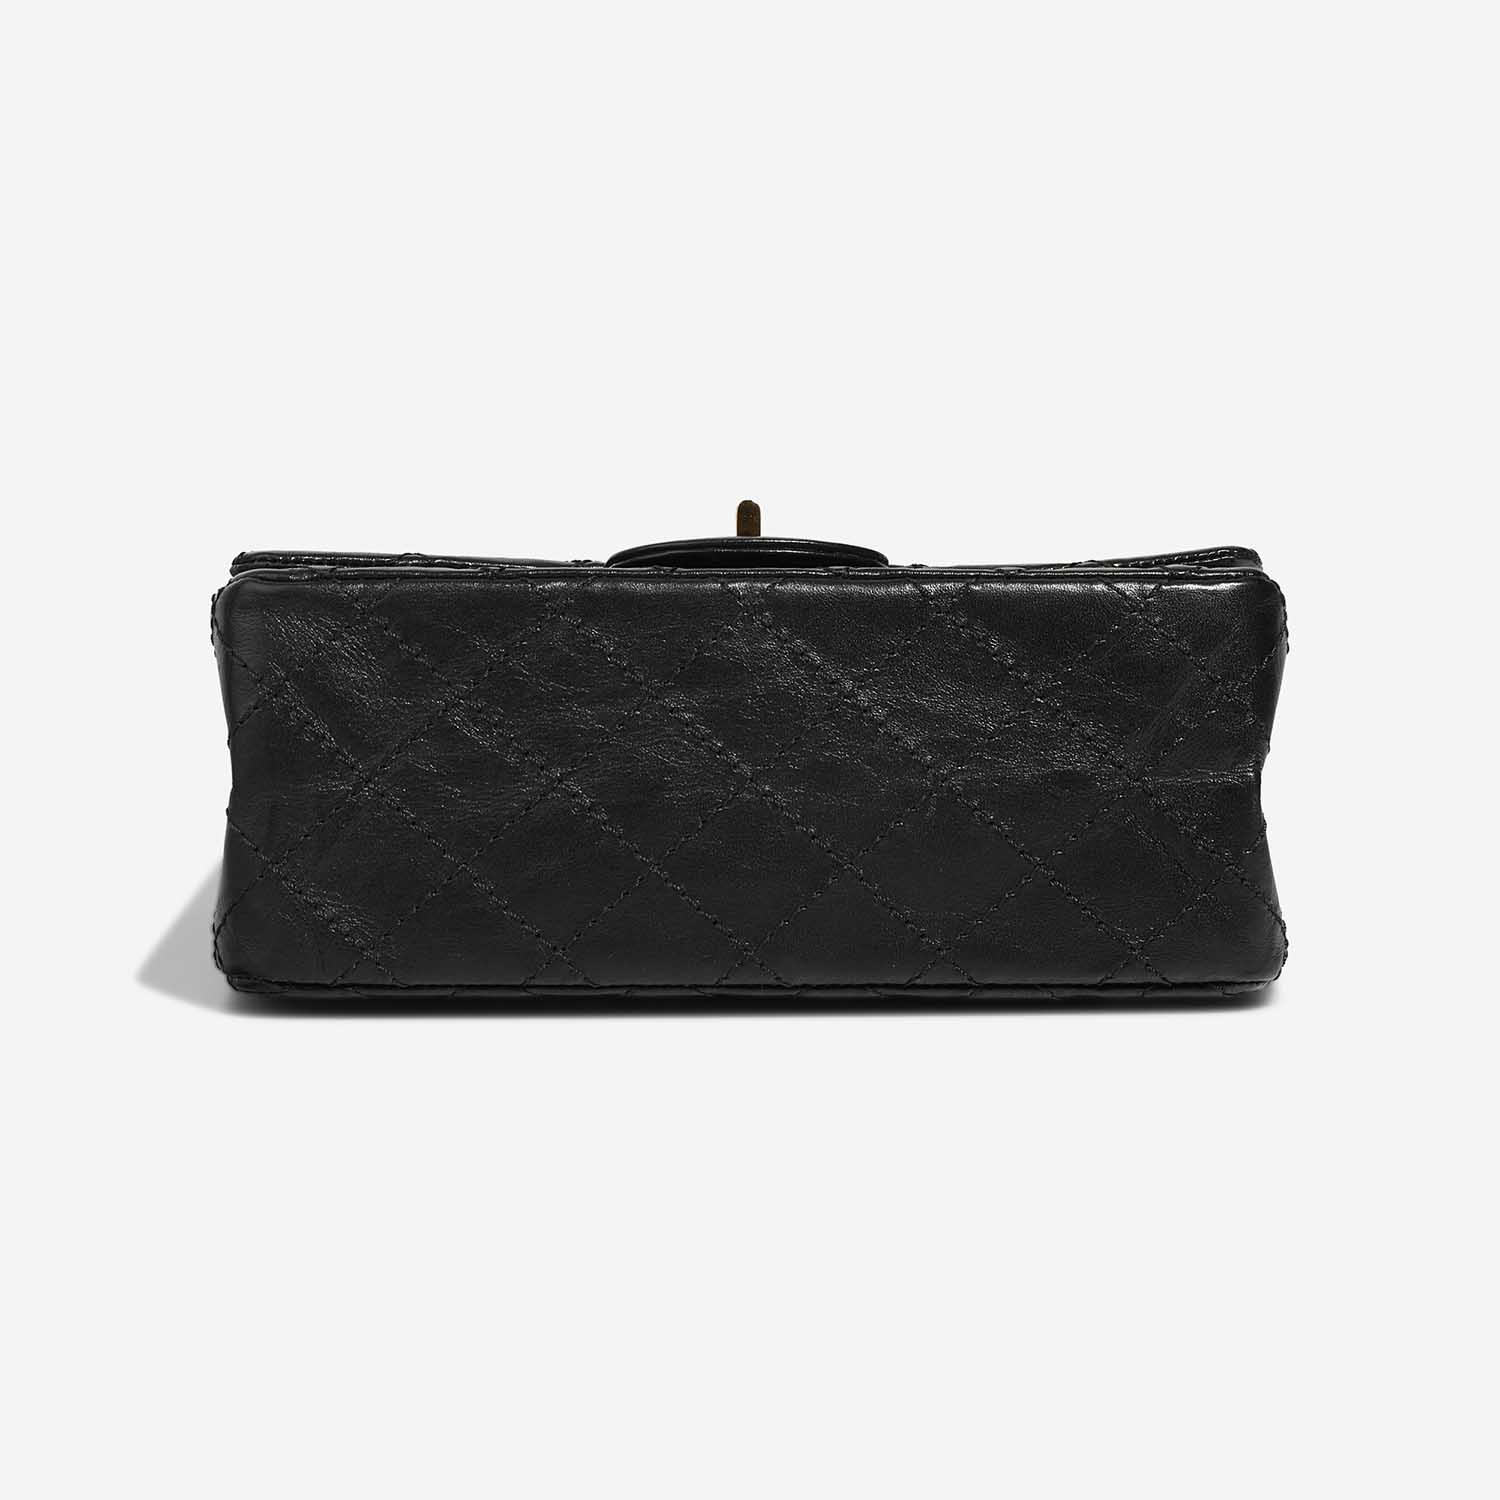 Chanel 255Reissue 224 Black Bottom | Verkaufen Sie Ihre Designer-Tasche auf Saclab.com